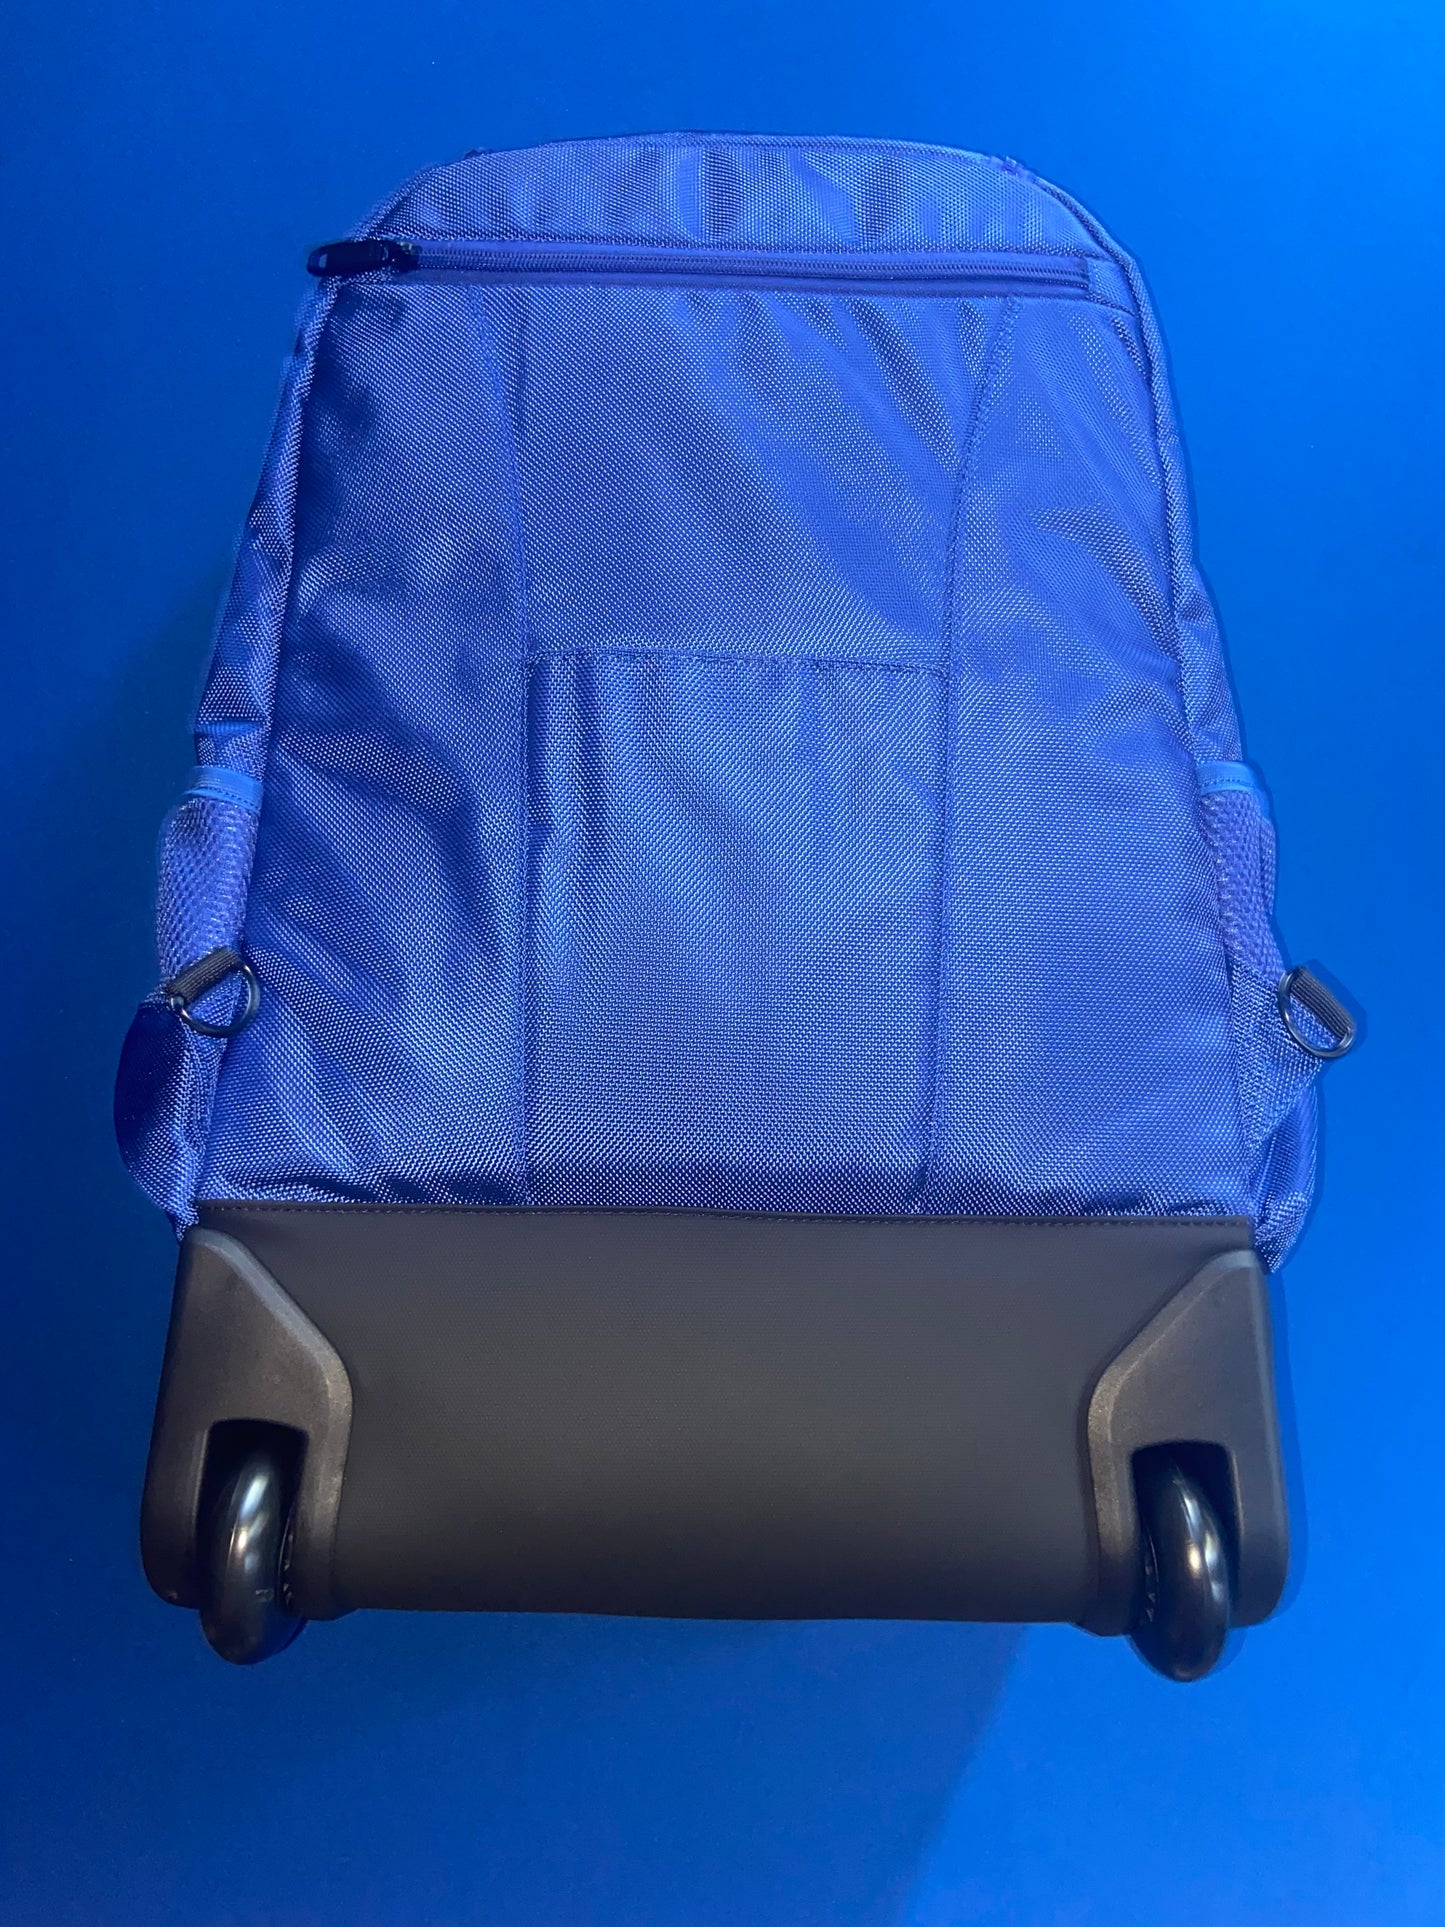 PRE-ORDER (until 5/7) Zeta Phi Beta Trolley Bag/Backpack